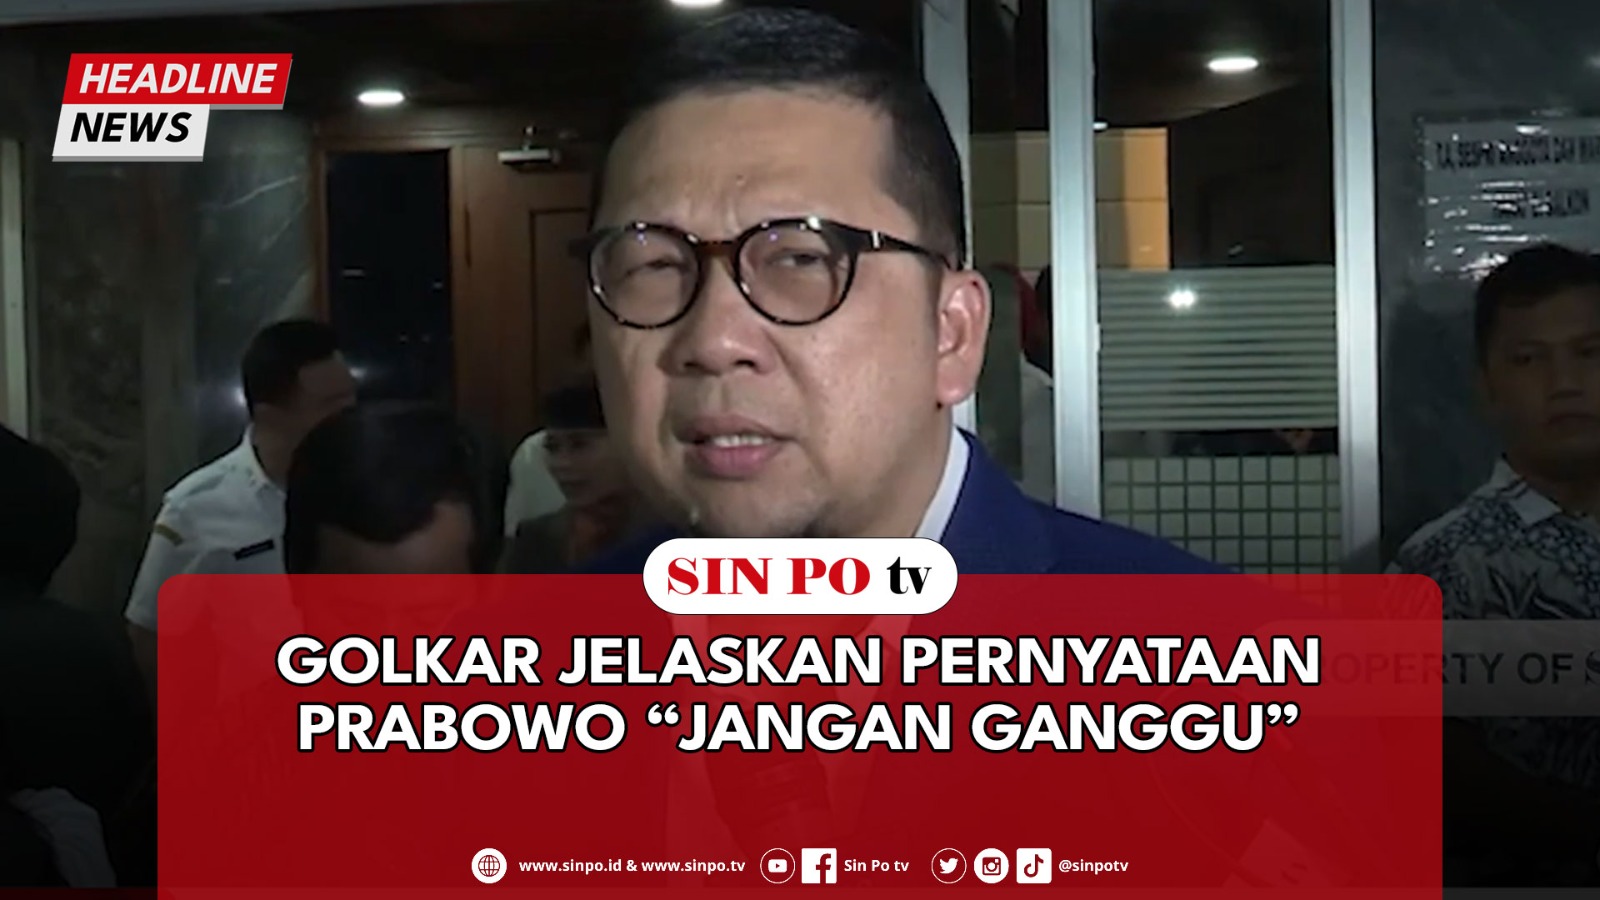 Golkar Jelaskan Pernyataan Prabowo “Jangan Ganggu”